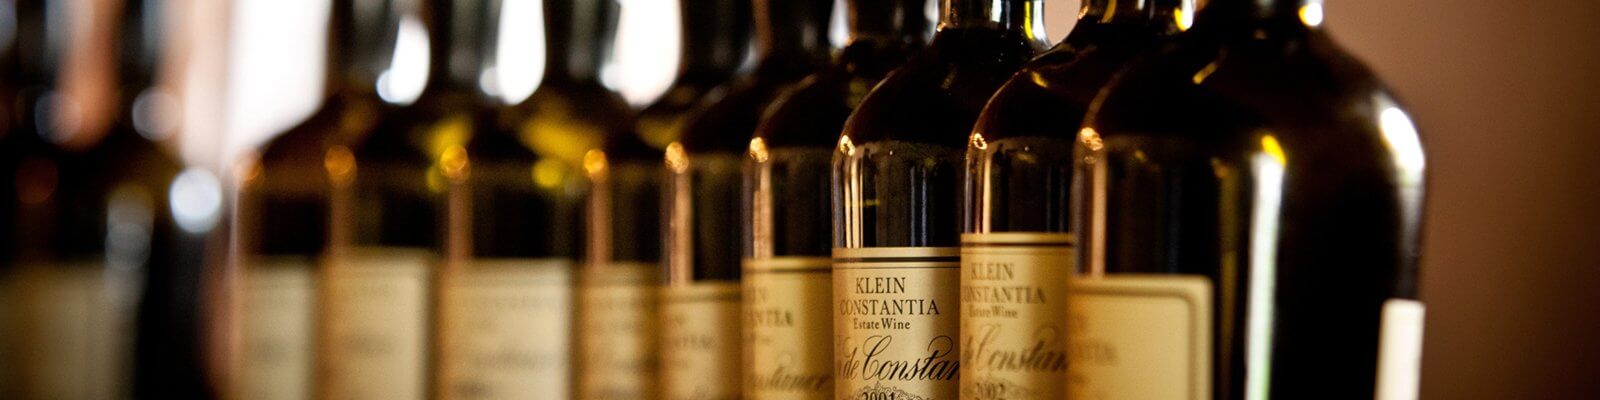 Unsere Kollektion von Klein Constantia - Finden Sie diese bei Onshore Cellars Ihrem Yacht-Weinlieferanten